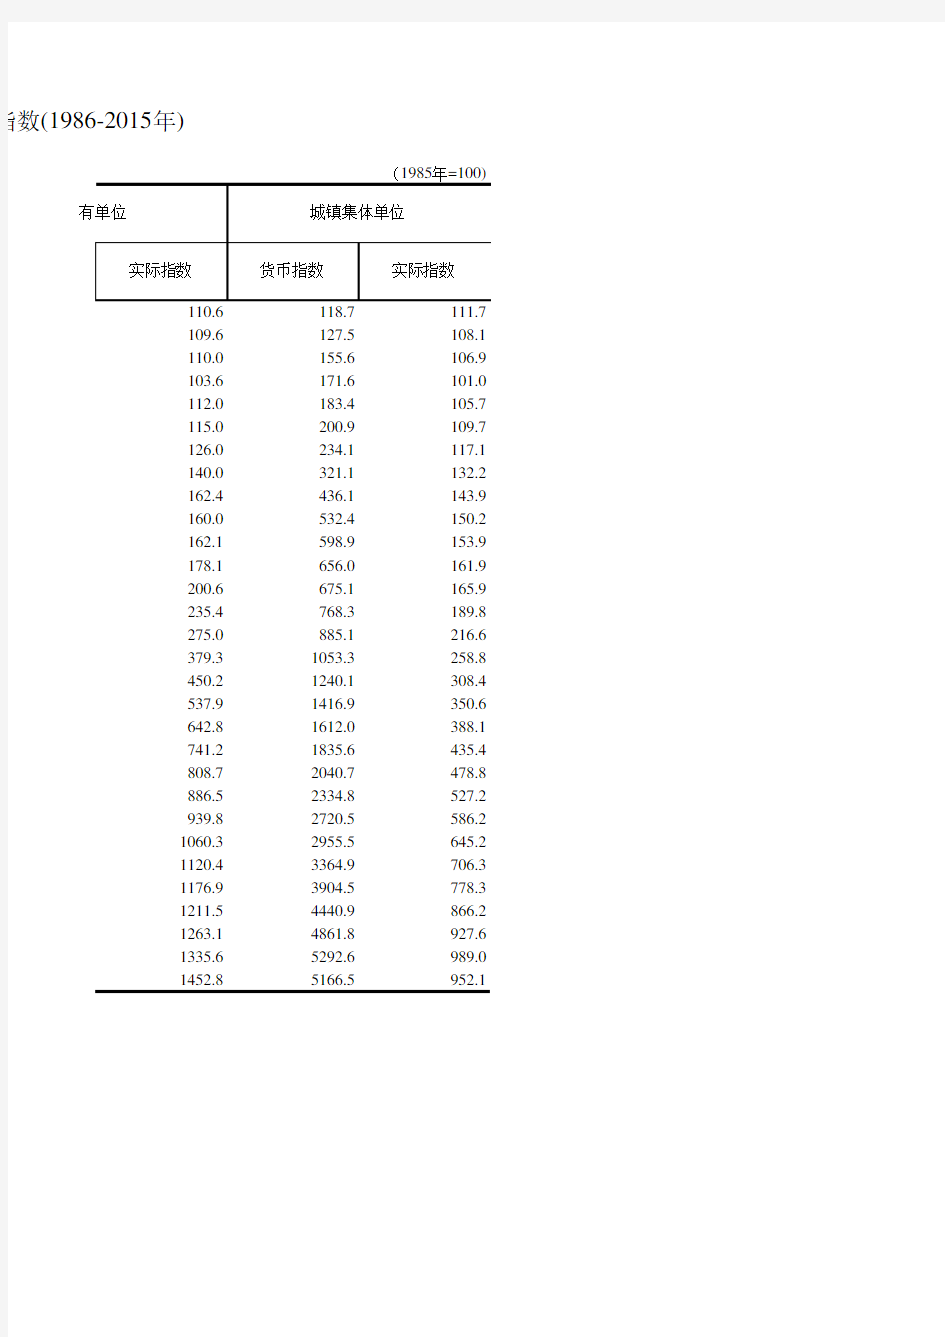 浙江统计年鉴2016社会经济发展指标：城镇单位就业人员平均工资指数(1986-2015年)